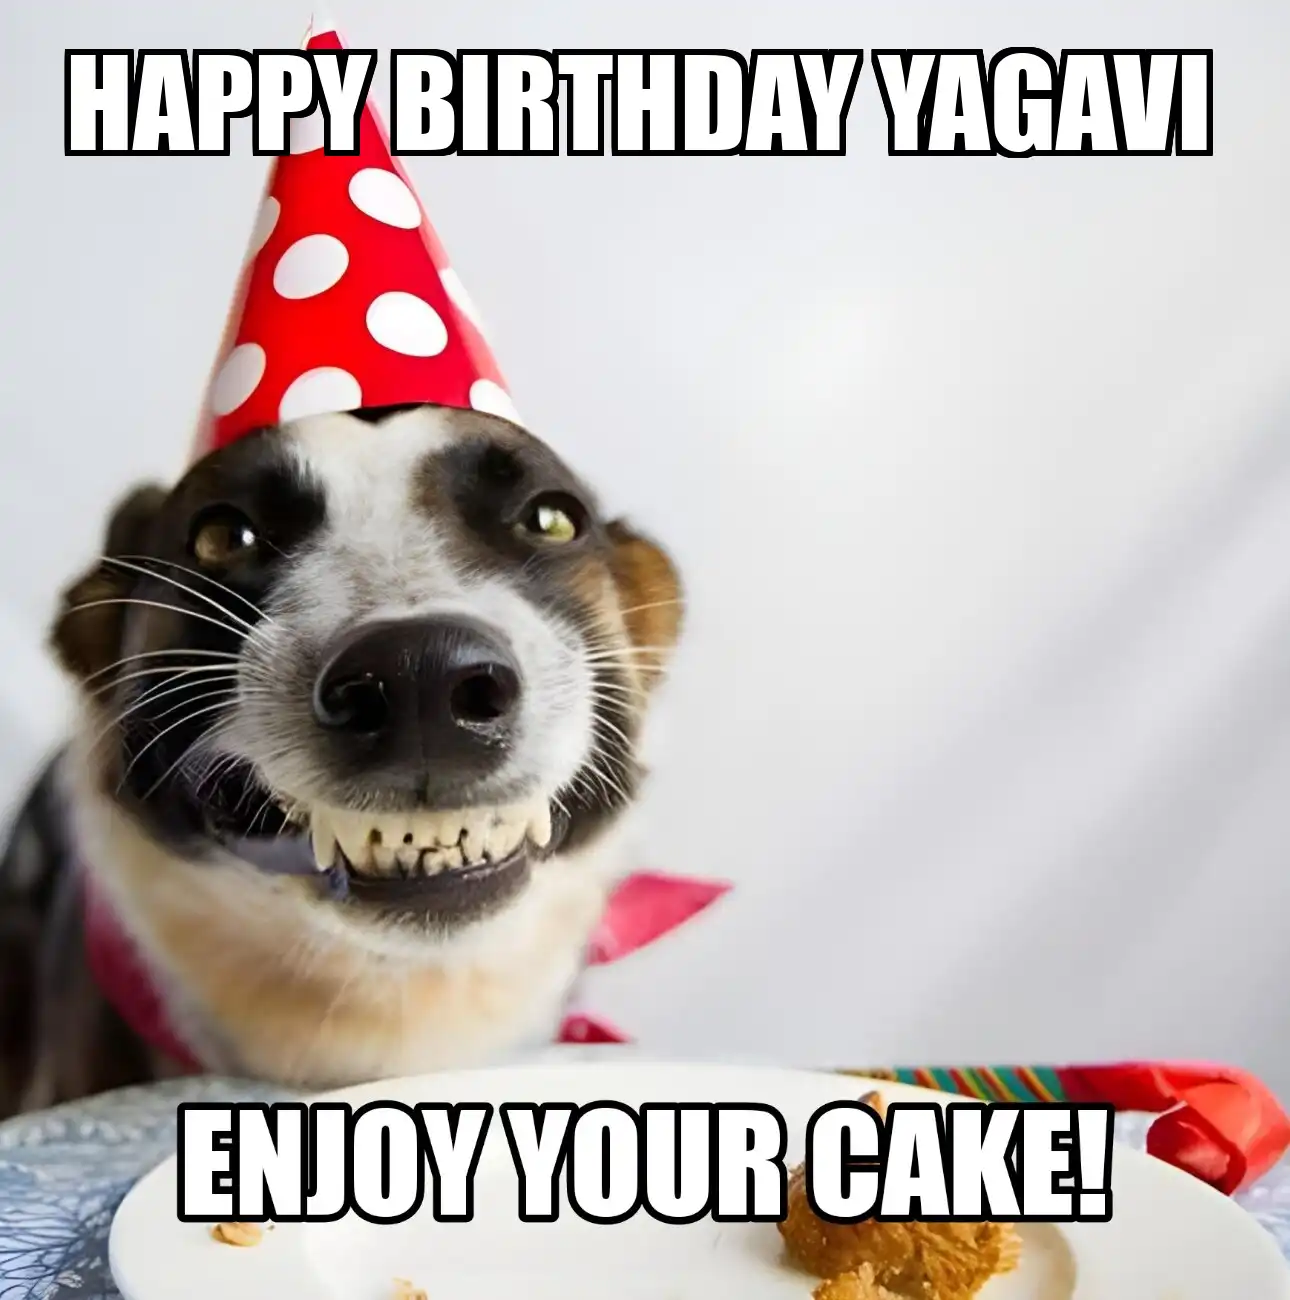 Happy Birthday Yagavi Enjoy Your Cake Dog Meme